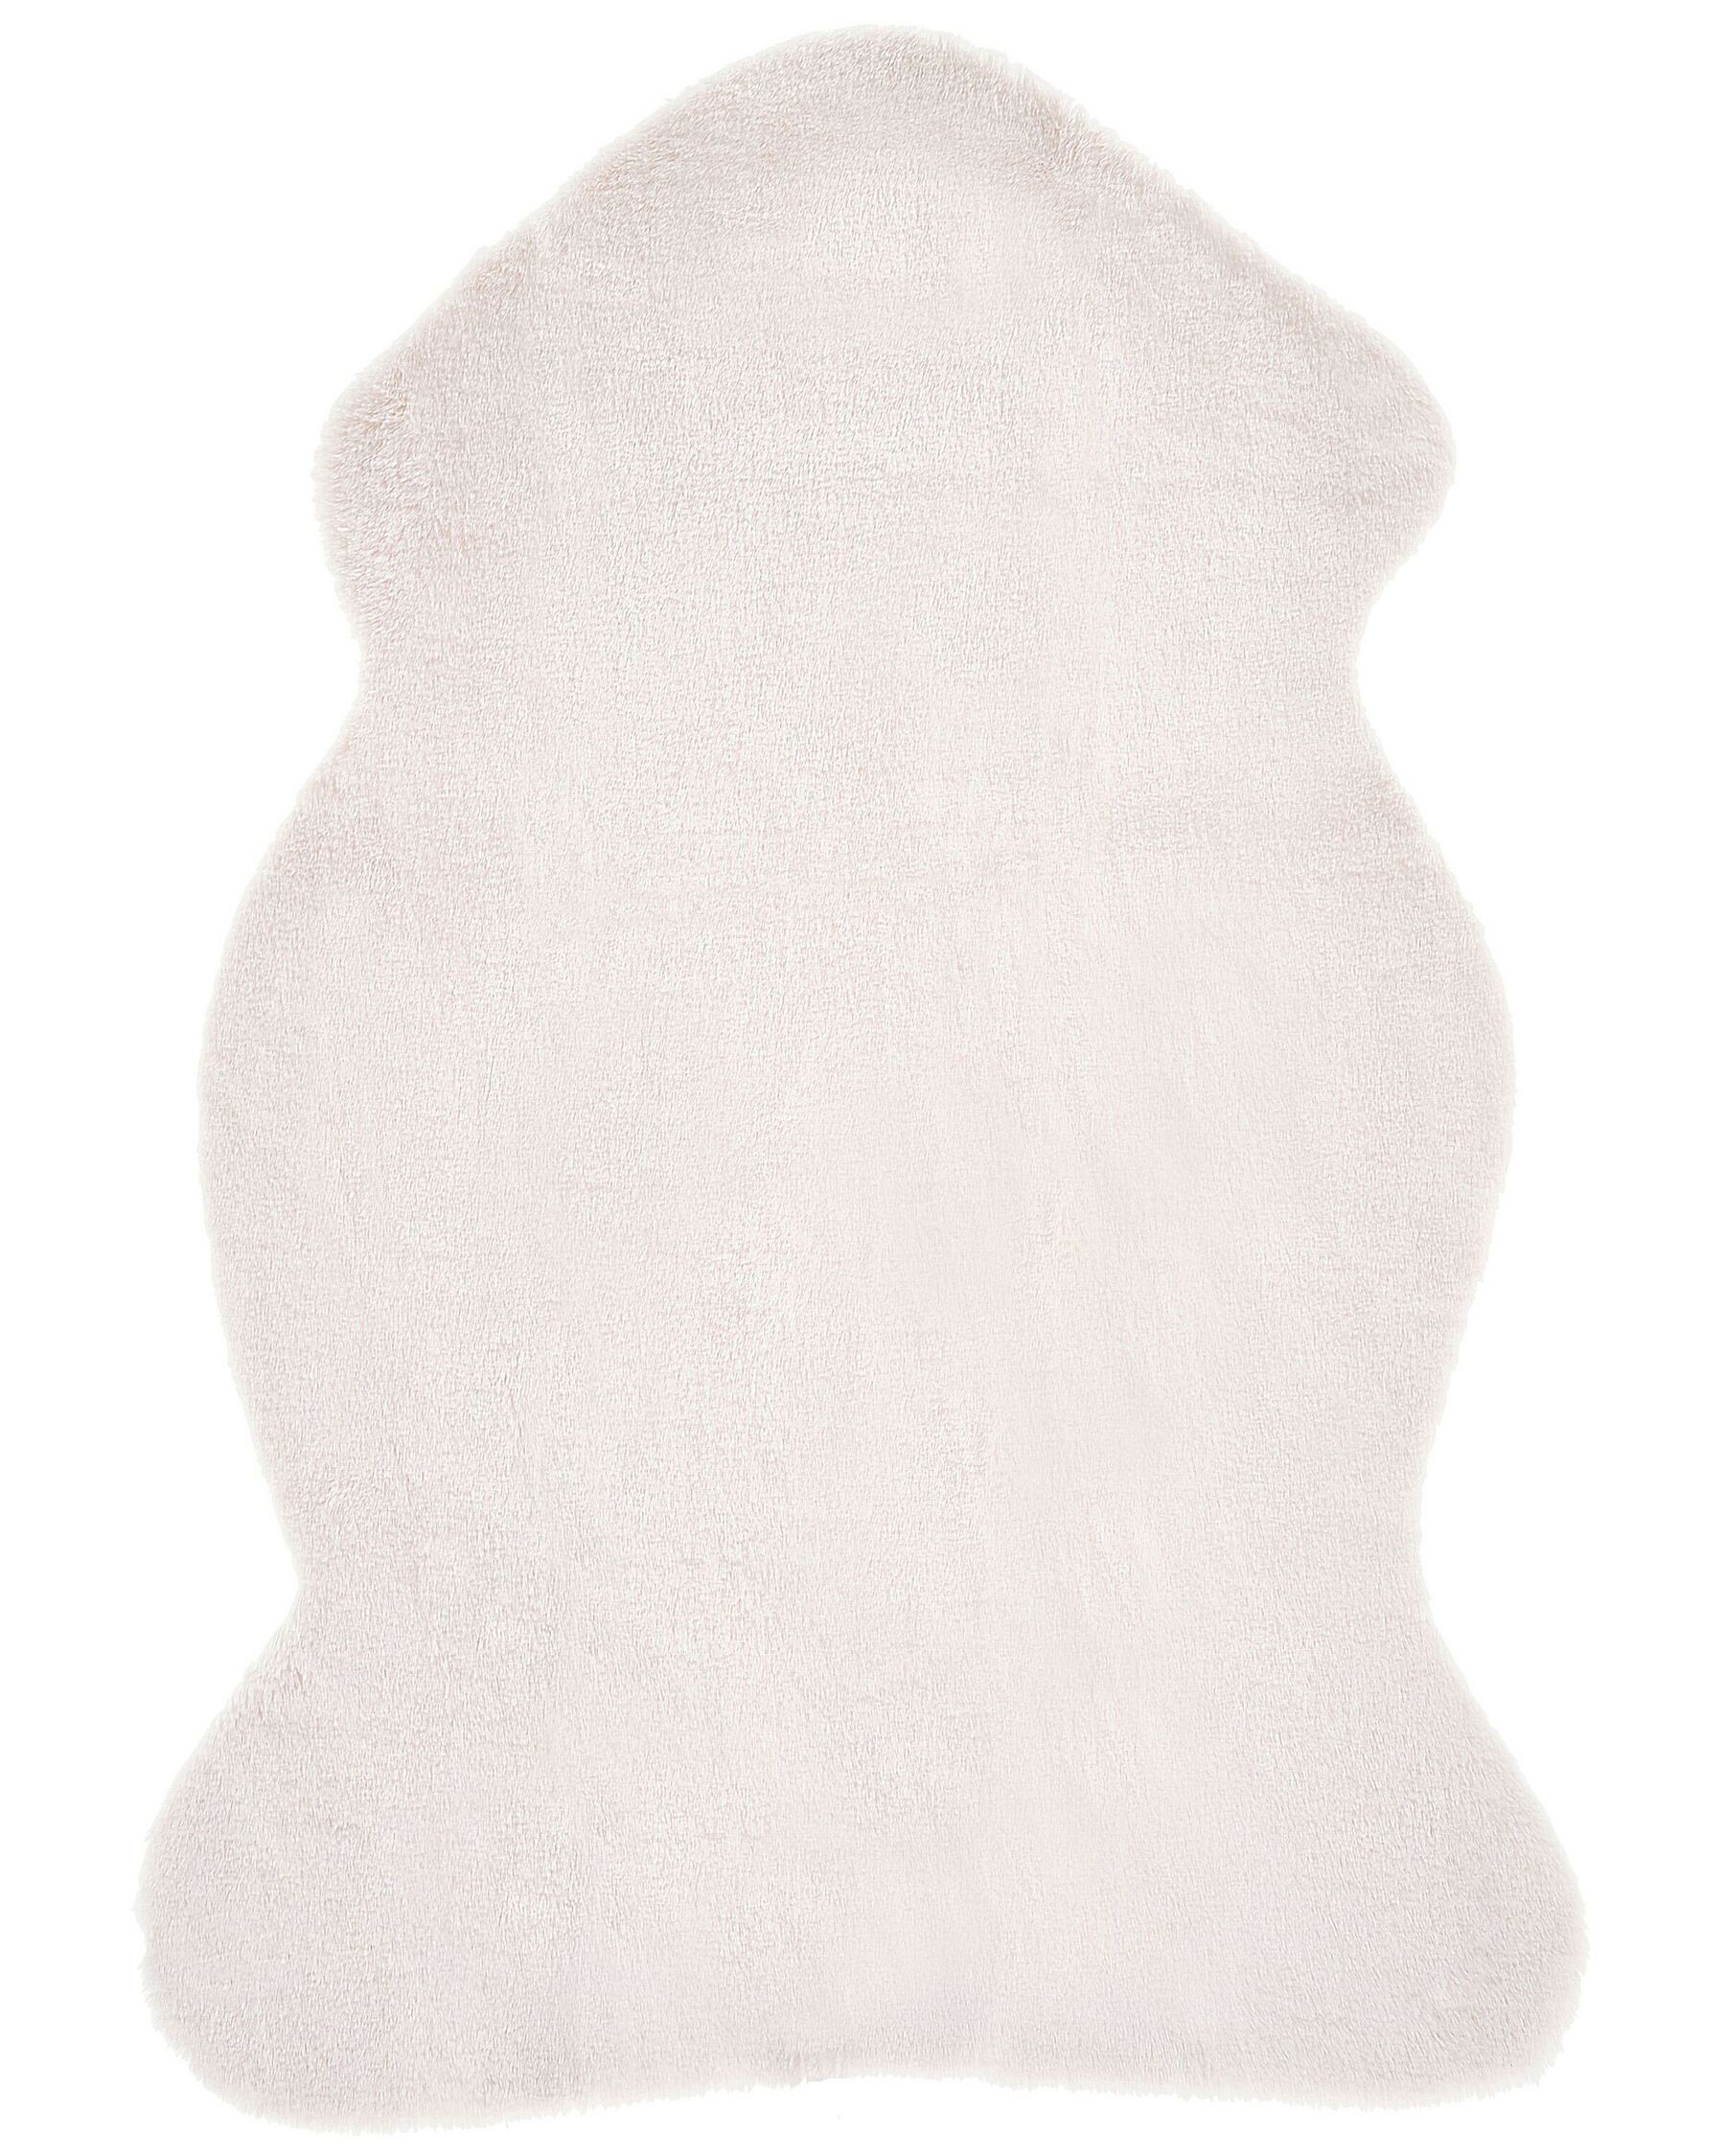 Fehér műnyúlszőr szőnyeg 60 x 90 cm UNDARA_790237